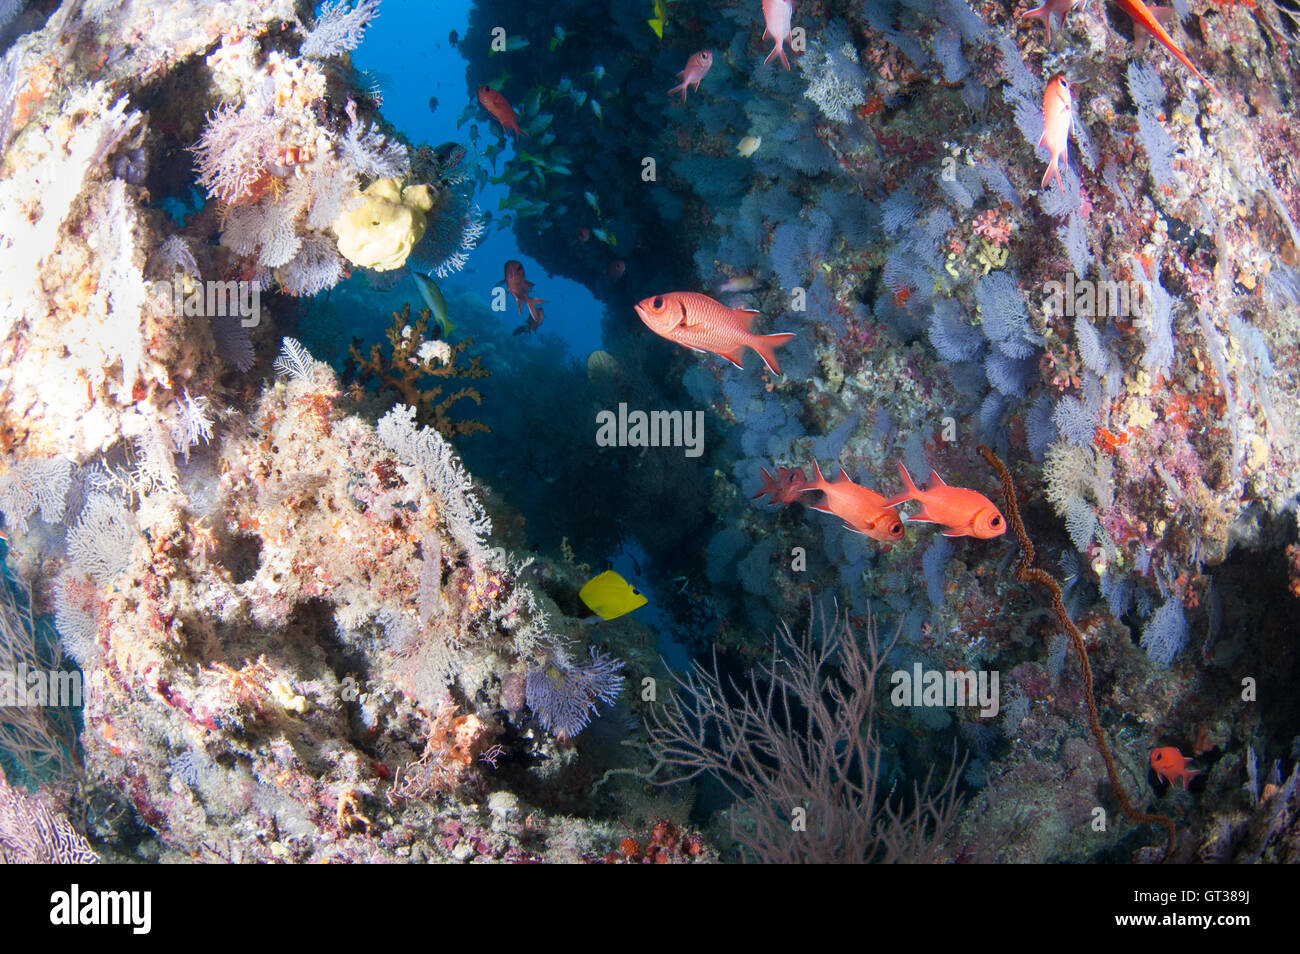 Ouverture dans le récif avec diversité de la vie marine à kuda rah thila, Maldives Banque D'Images